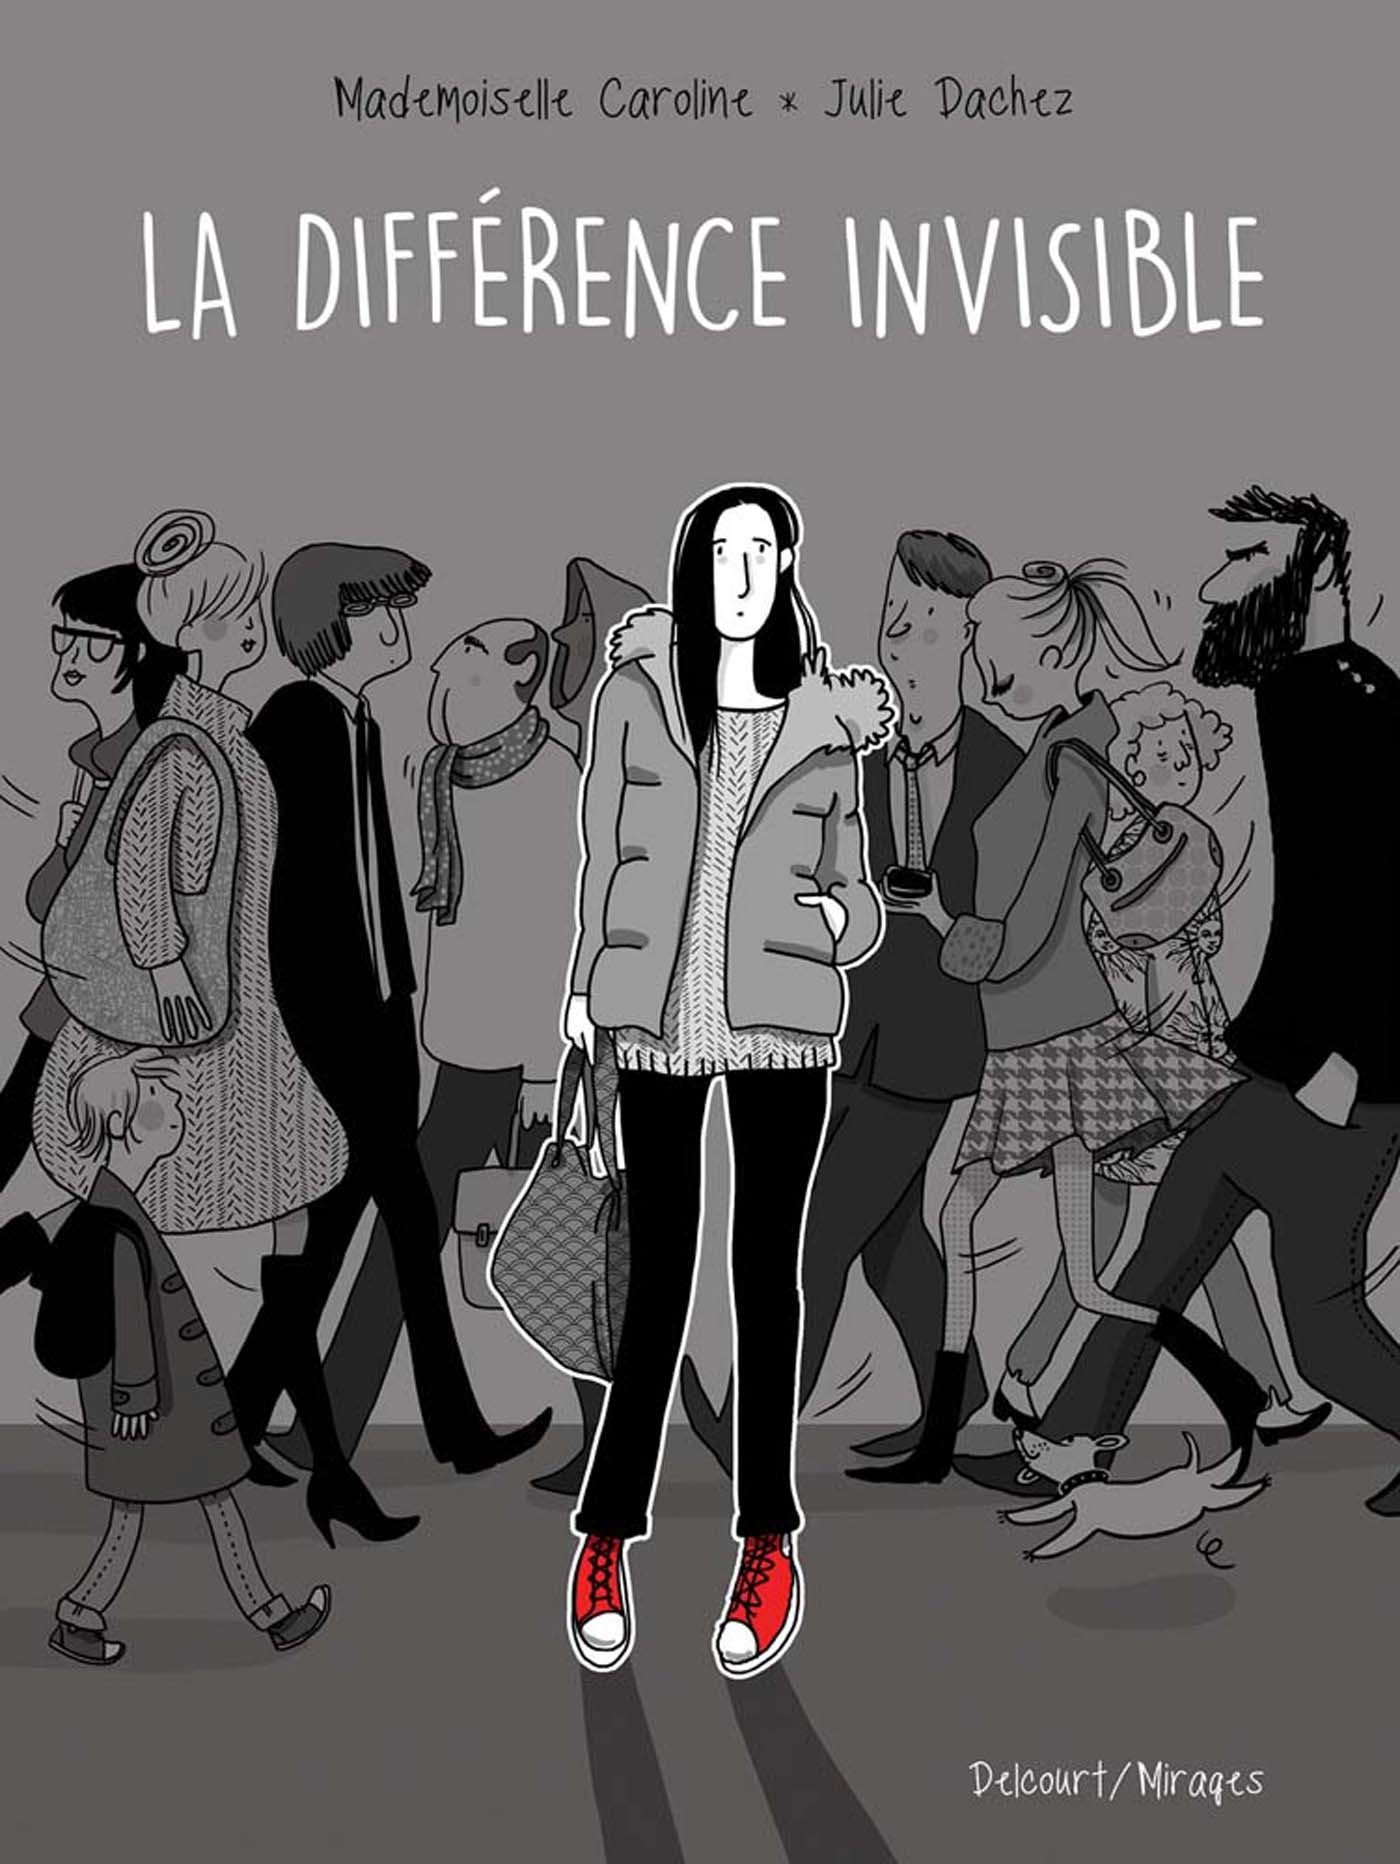 La Diffrence invisible - Julie Dachez et Mademoiselle Caroline